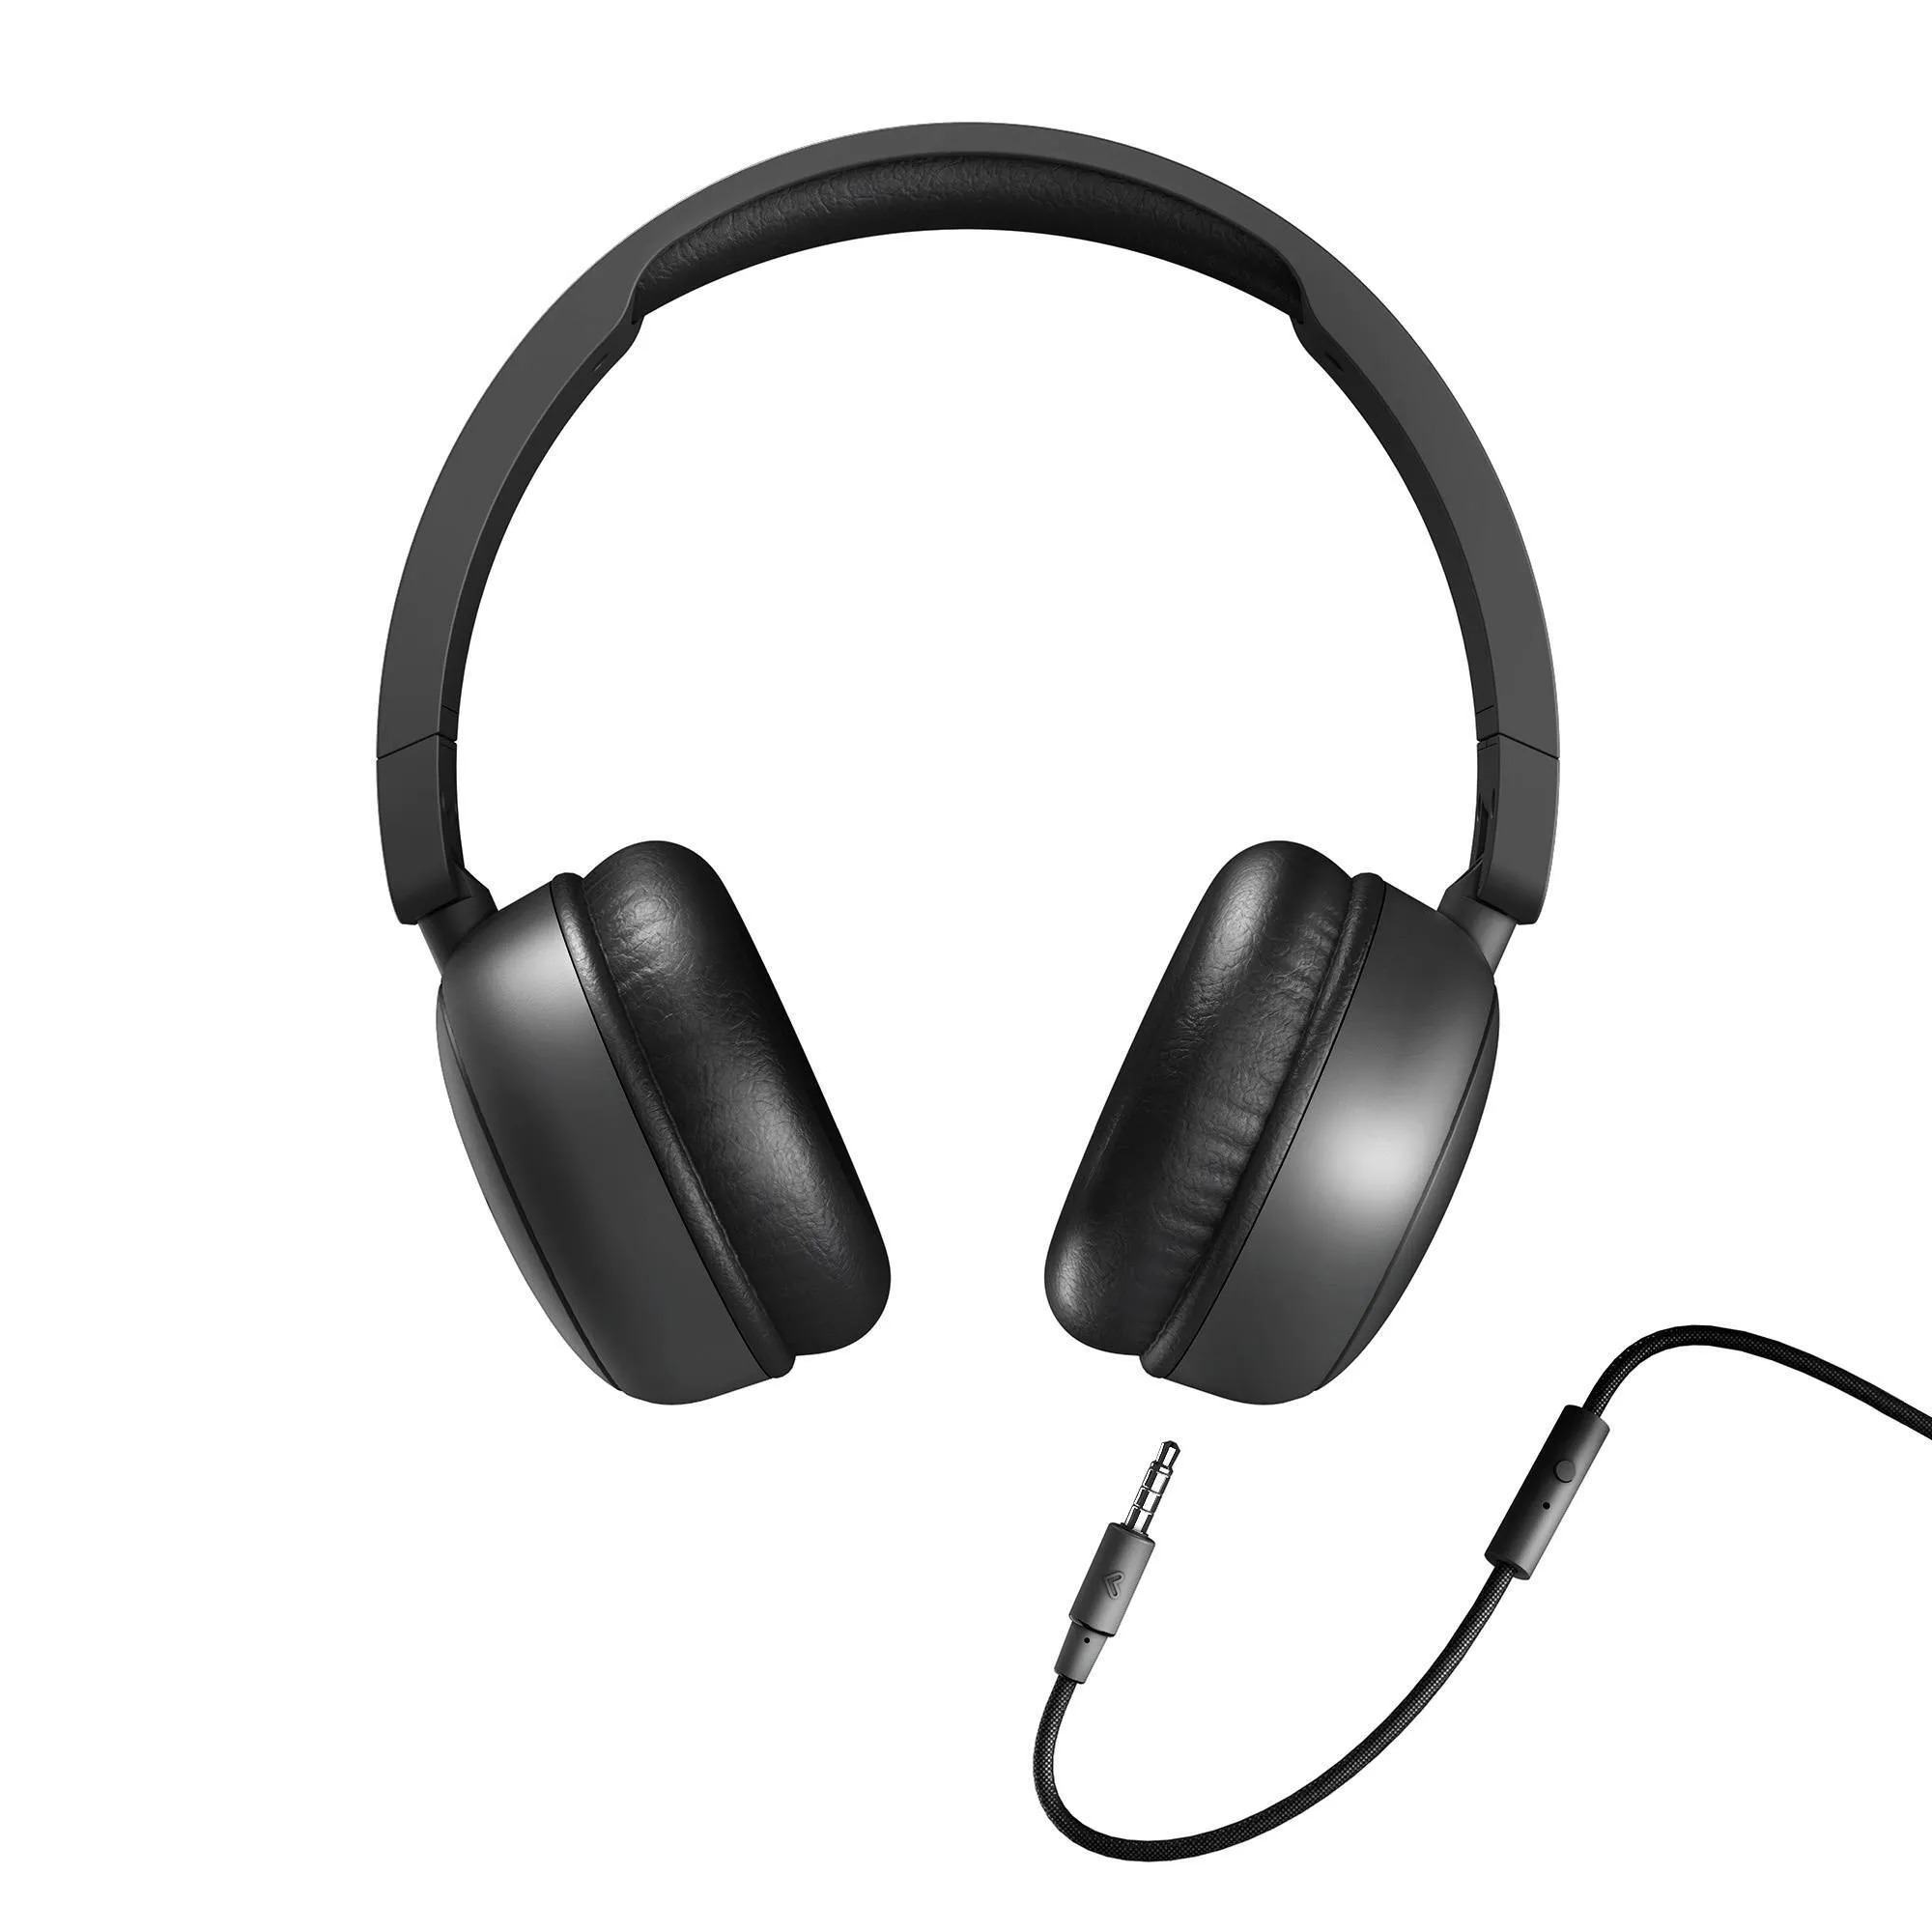  Audífonos con cable extraíble Soundspire para una mayor comodidad y seguridad 